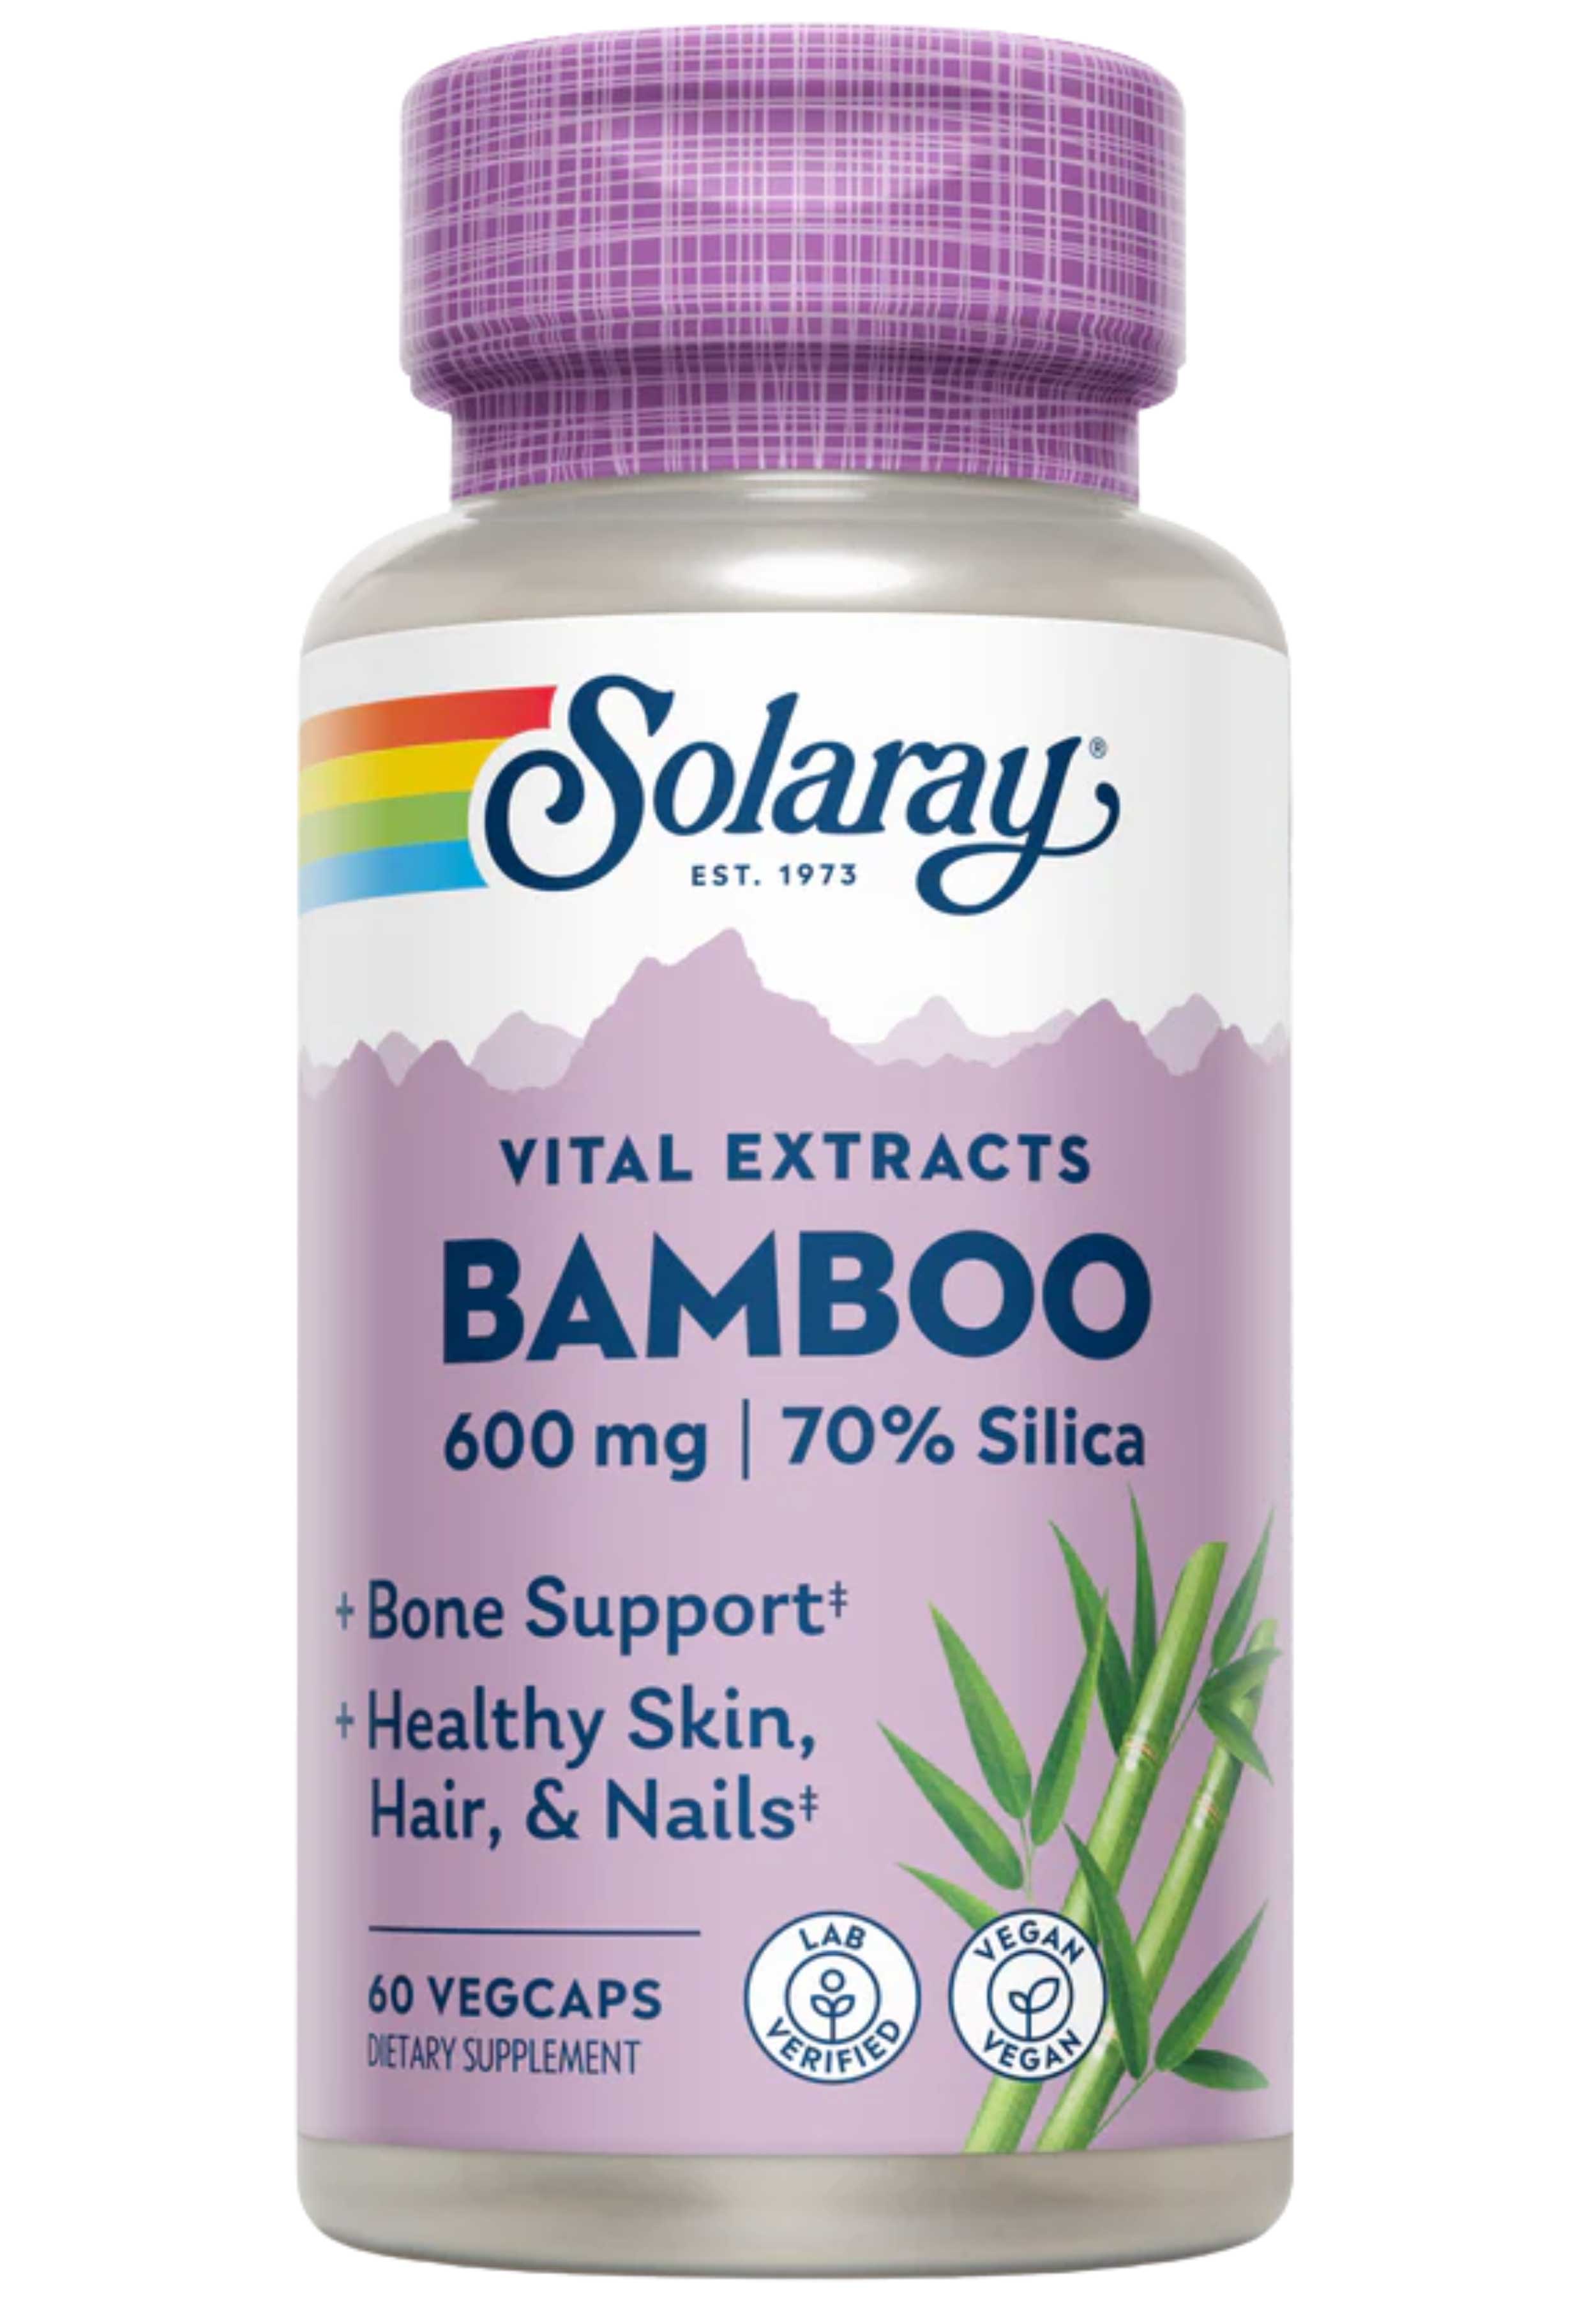 Solaray Bamboo Vital Extracts